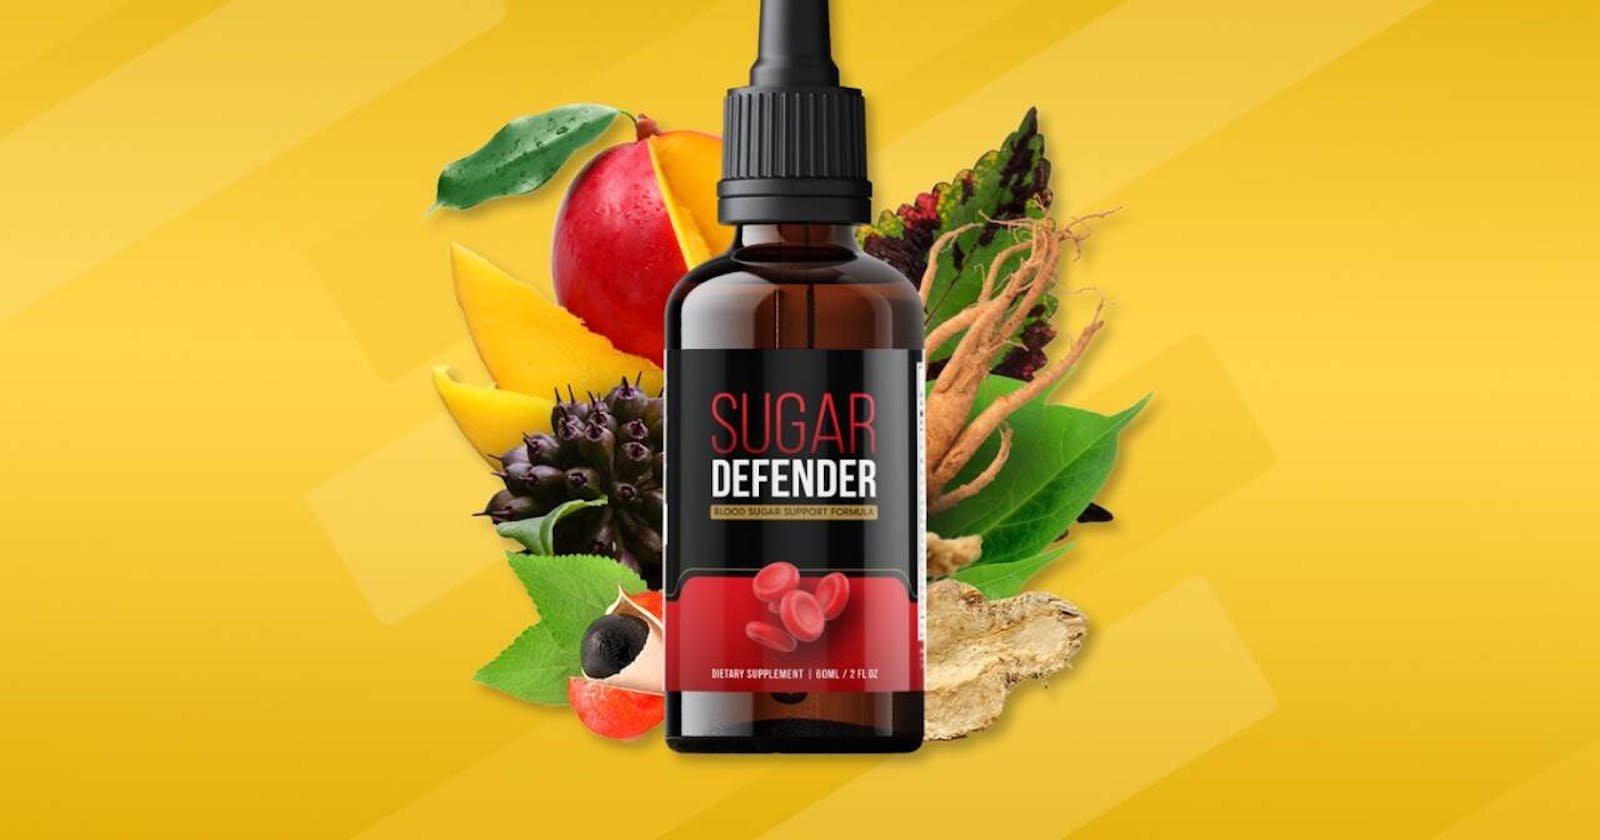 Sugar Defender 24 Amazon